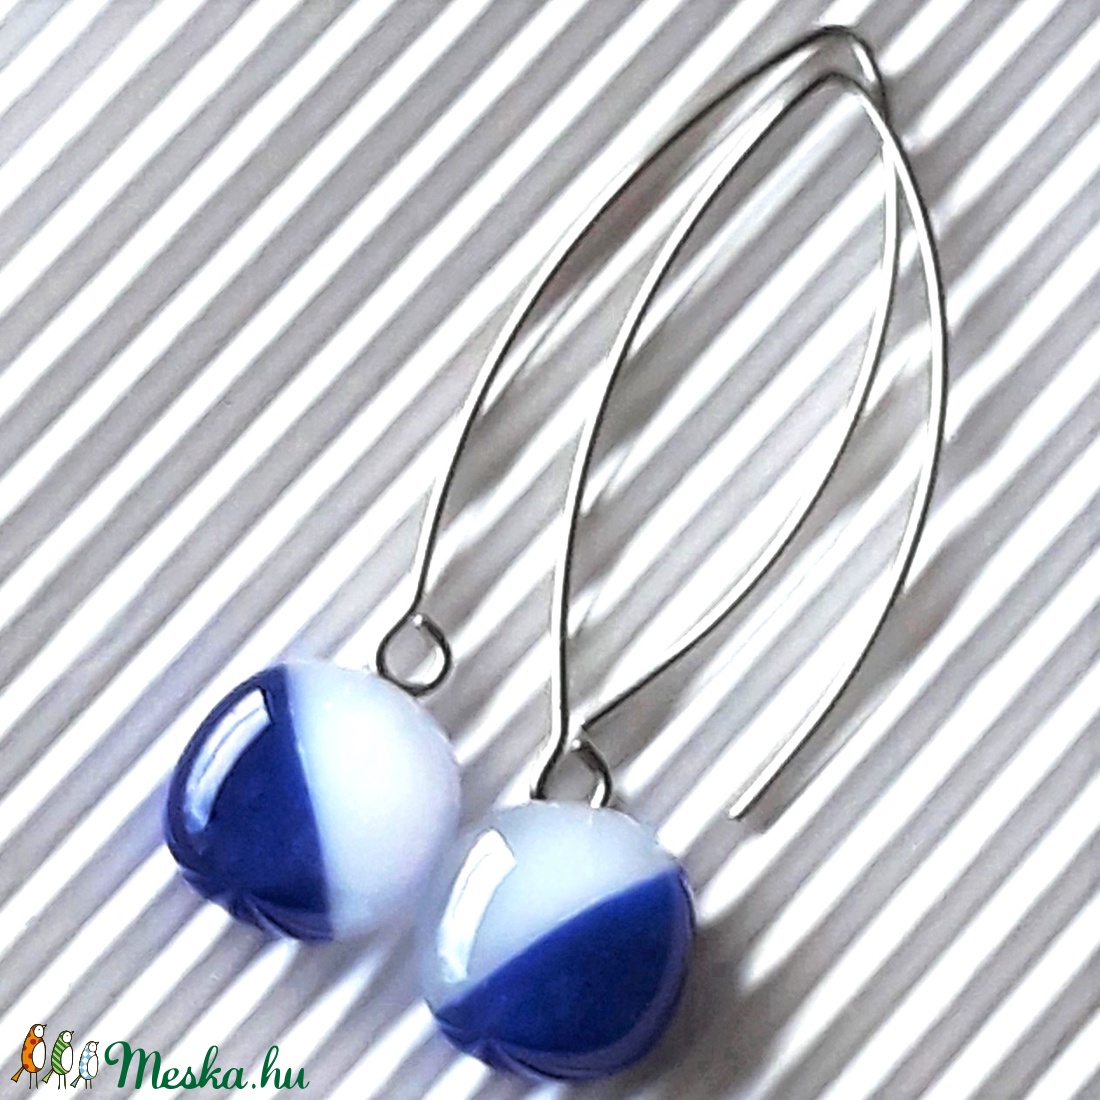 Tengerész kék-fehér lógós kocka üveg fülbevaló hosszú, trendi, design orvosi fém akasztón, üvegékszer - ékszer - fülbevaló - lógó fülbevaló - Meska.hu